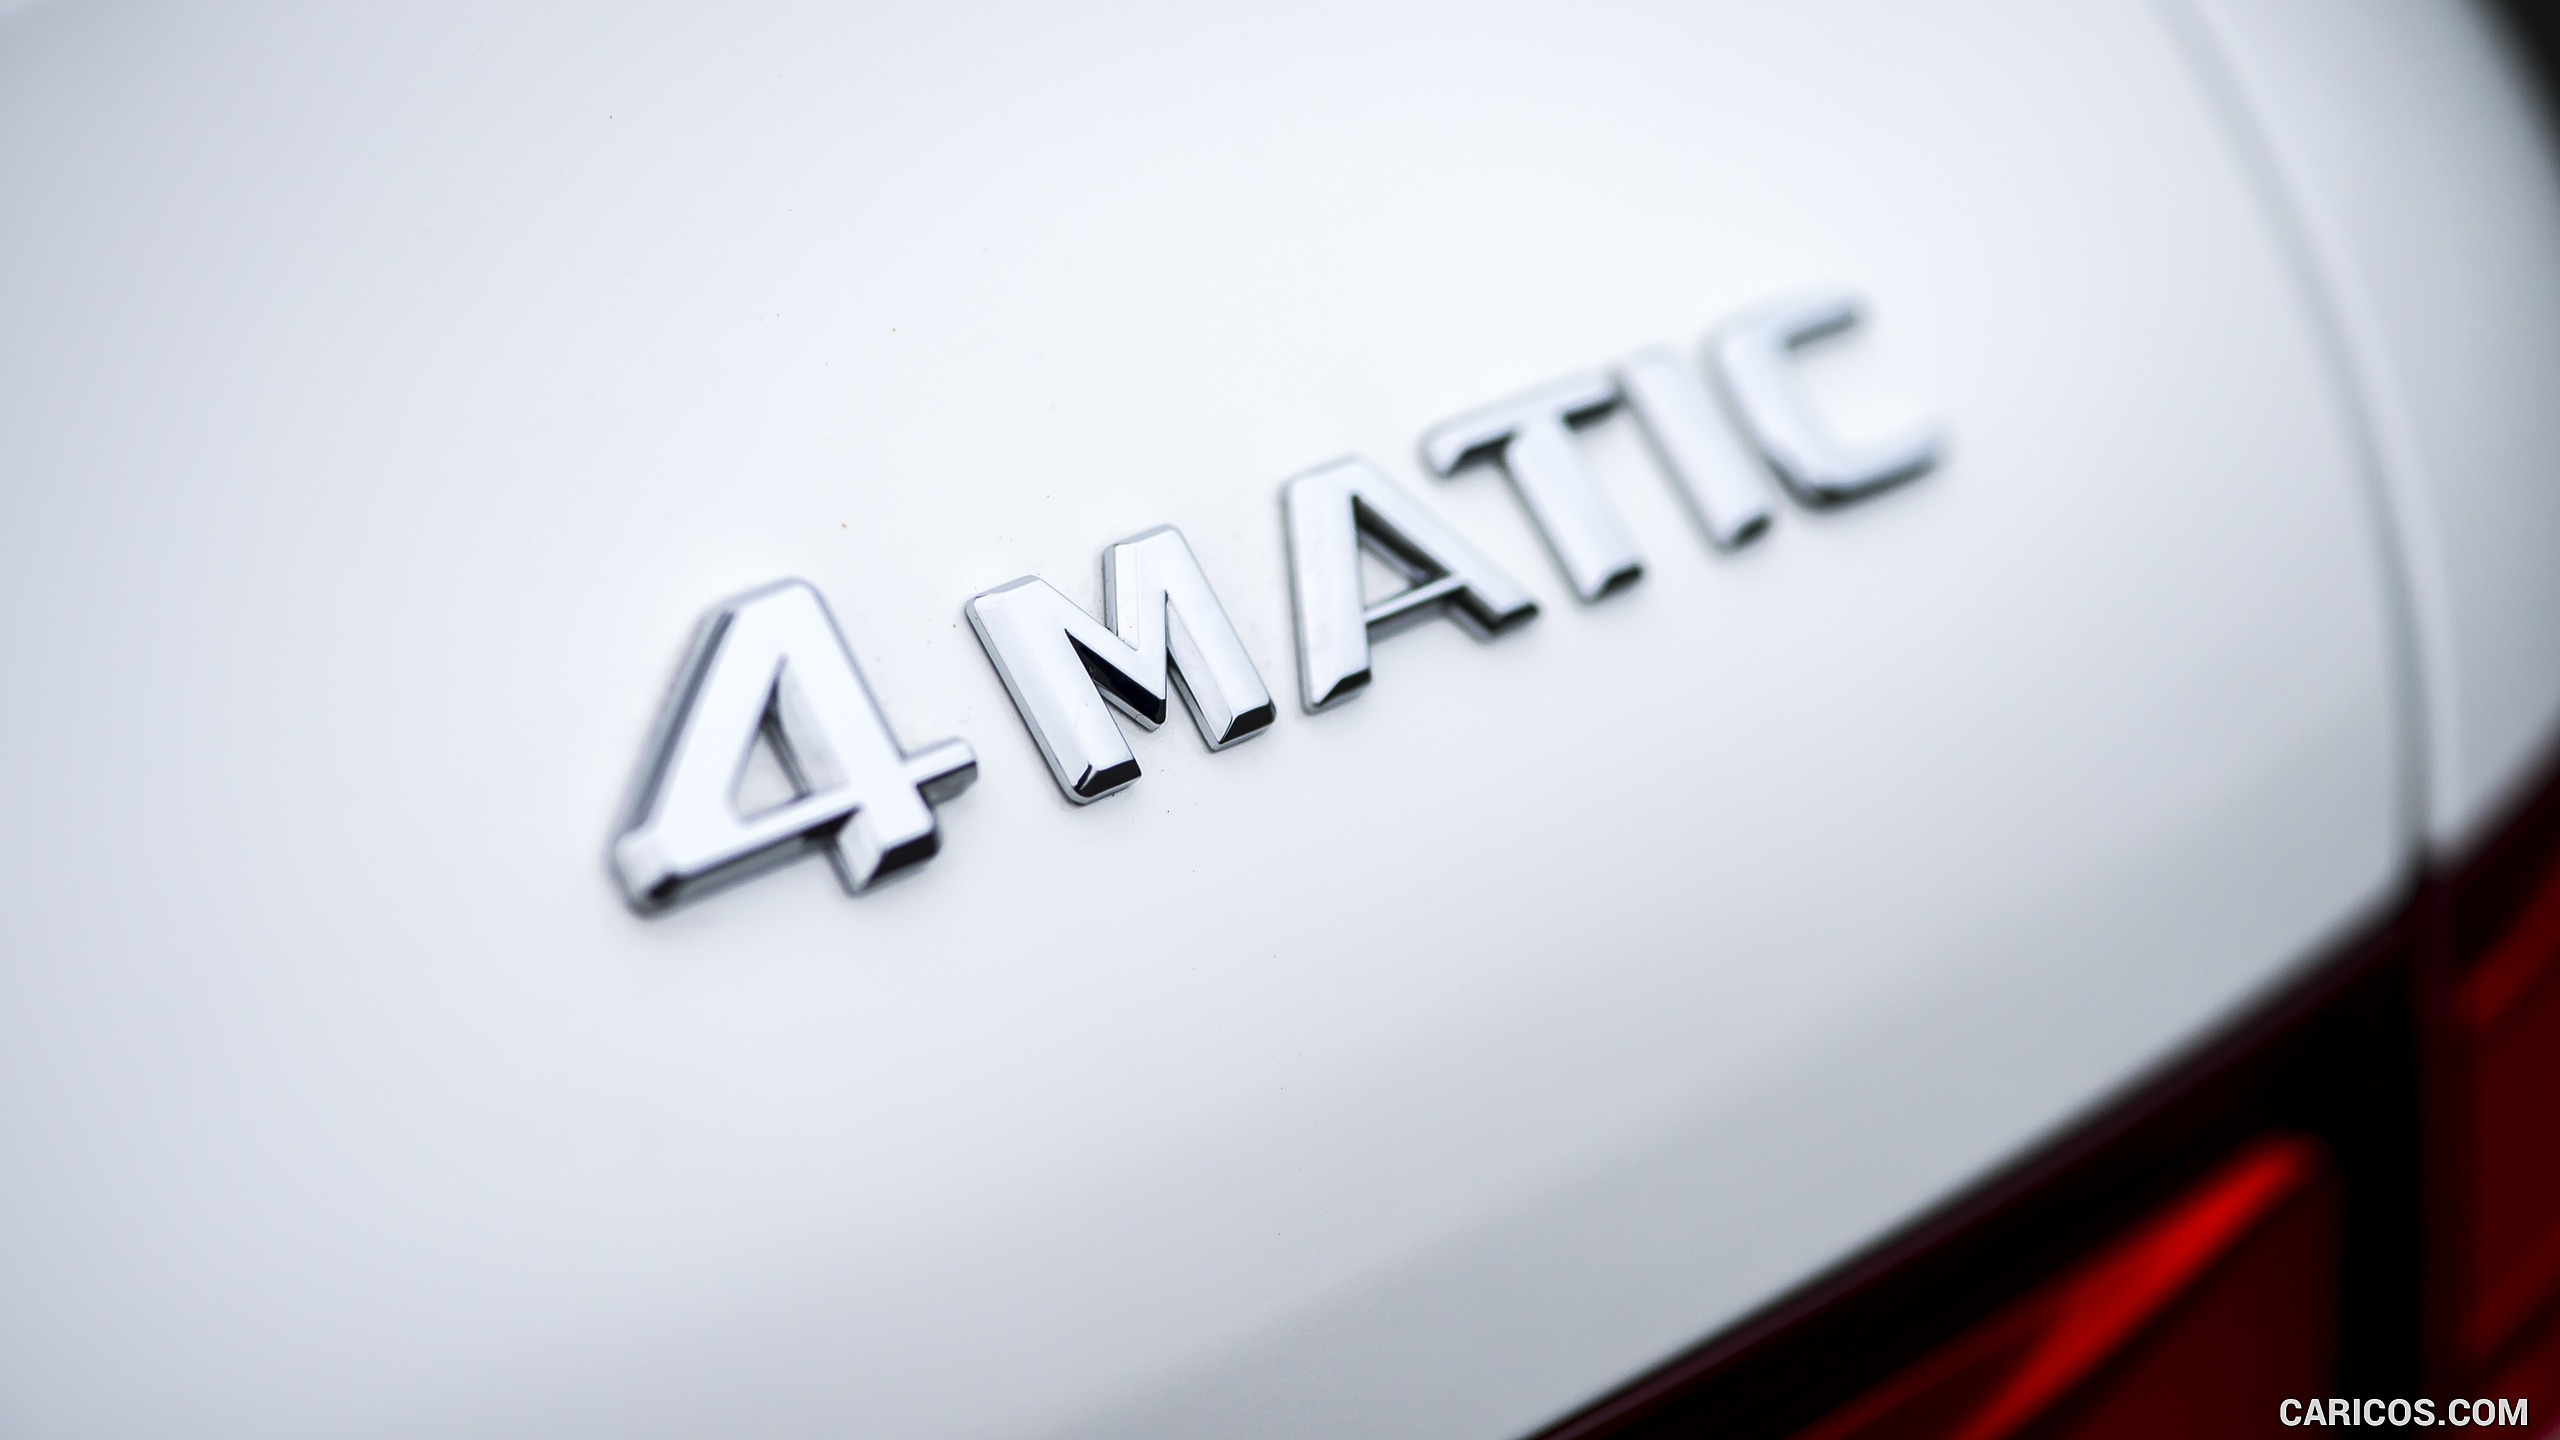 2016 Mercedes-Benz GLC 250d 4MATIC AMG Line (UK-Spec) - Badge, #87 of 130